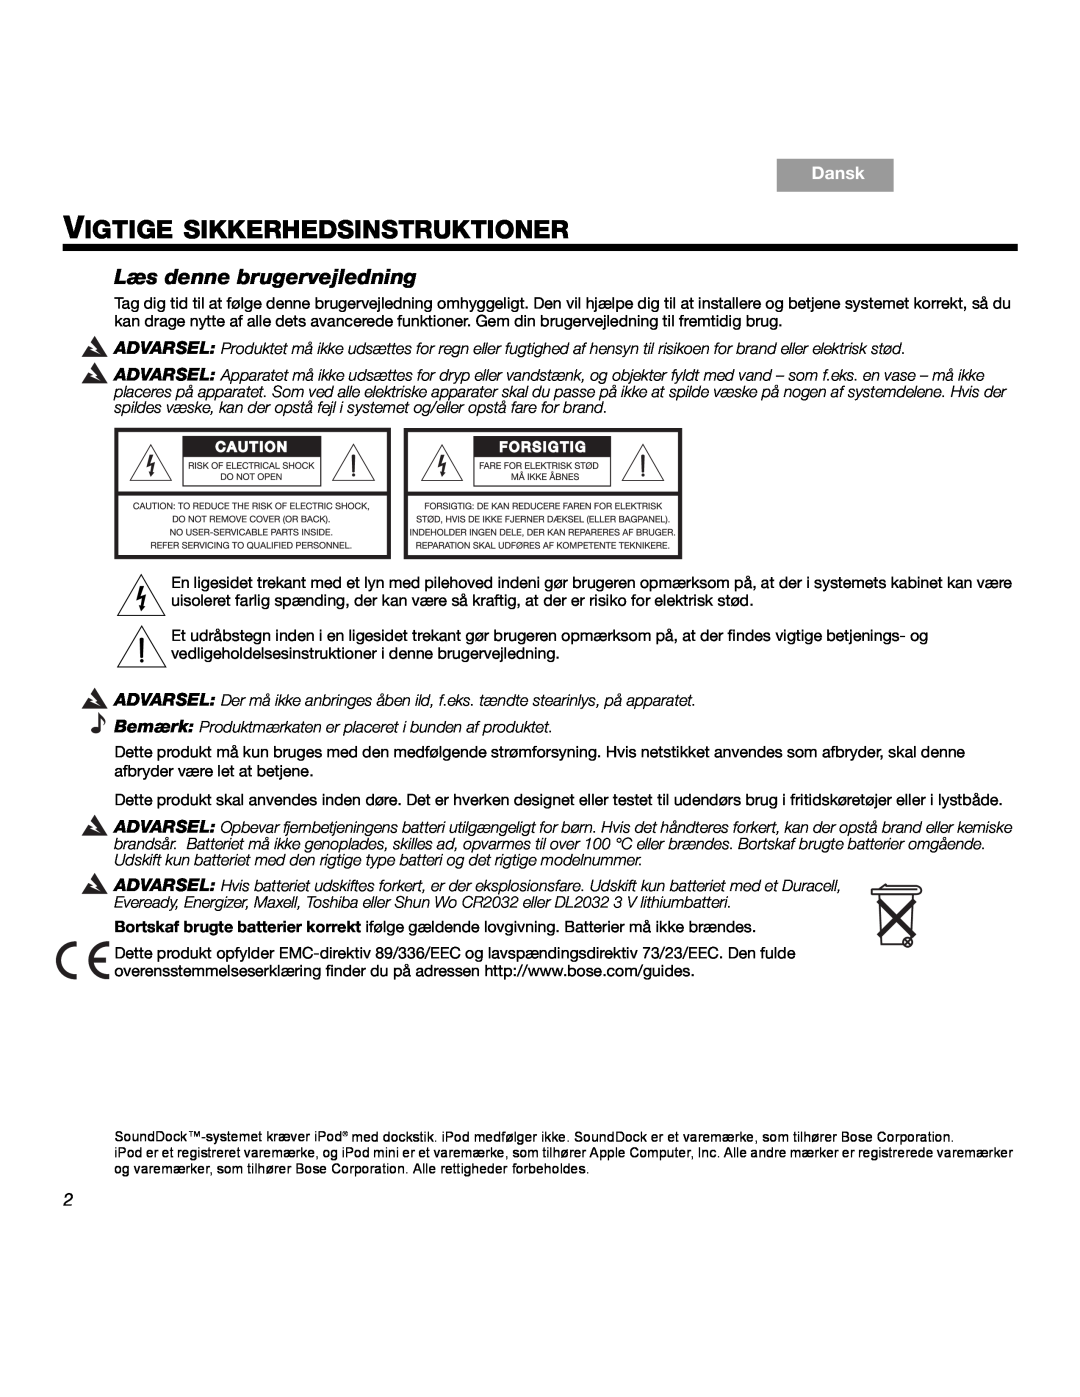 Bose SOUNDDOCKTM manual Vigtige Sikkerhedsinstruktioner, Læs denne brugervejledning, Dansk 